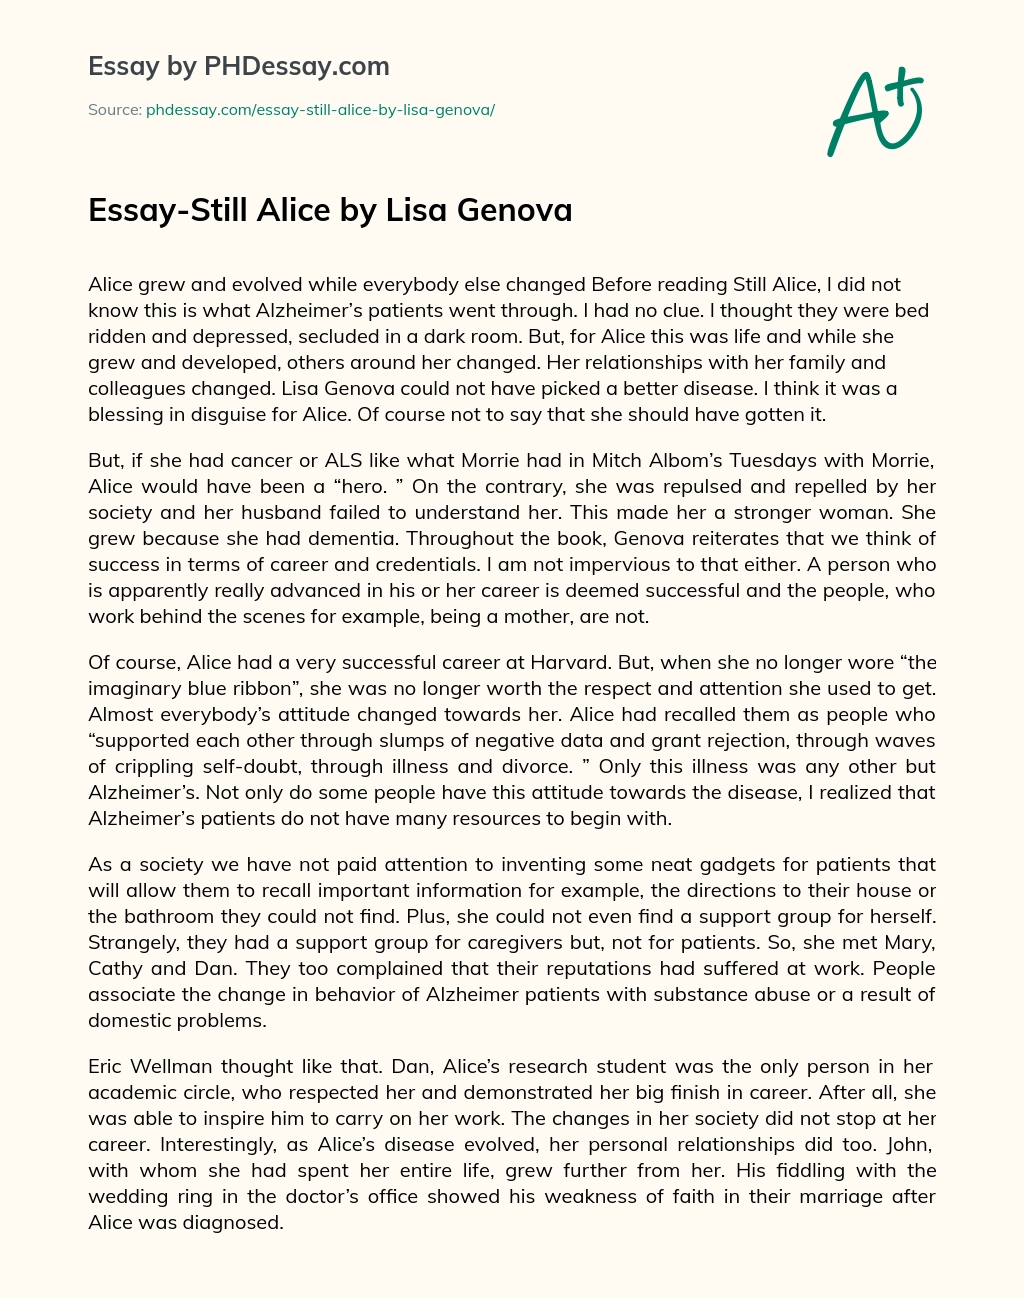 Essay-Still Alice by Lisa Genova essay